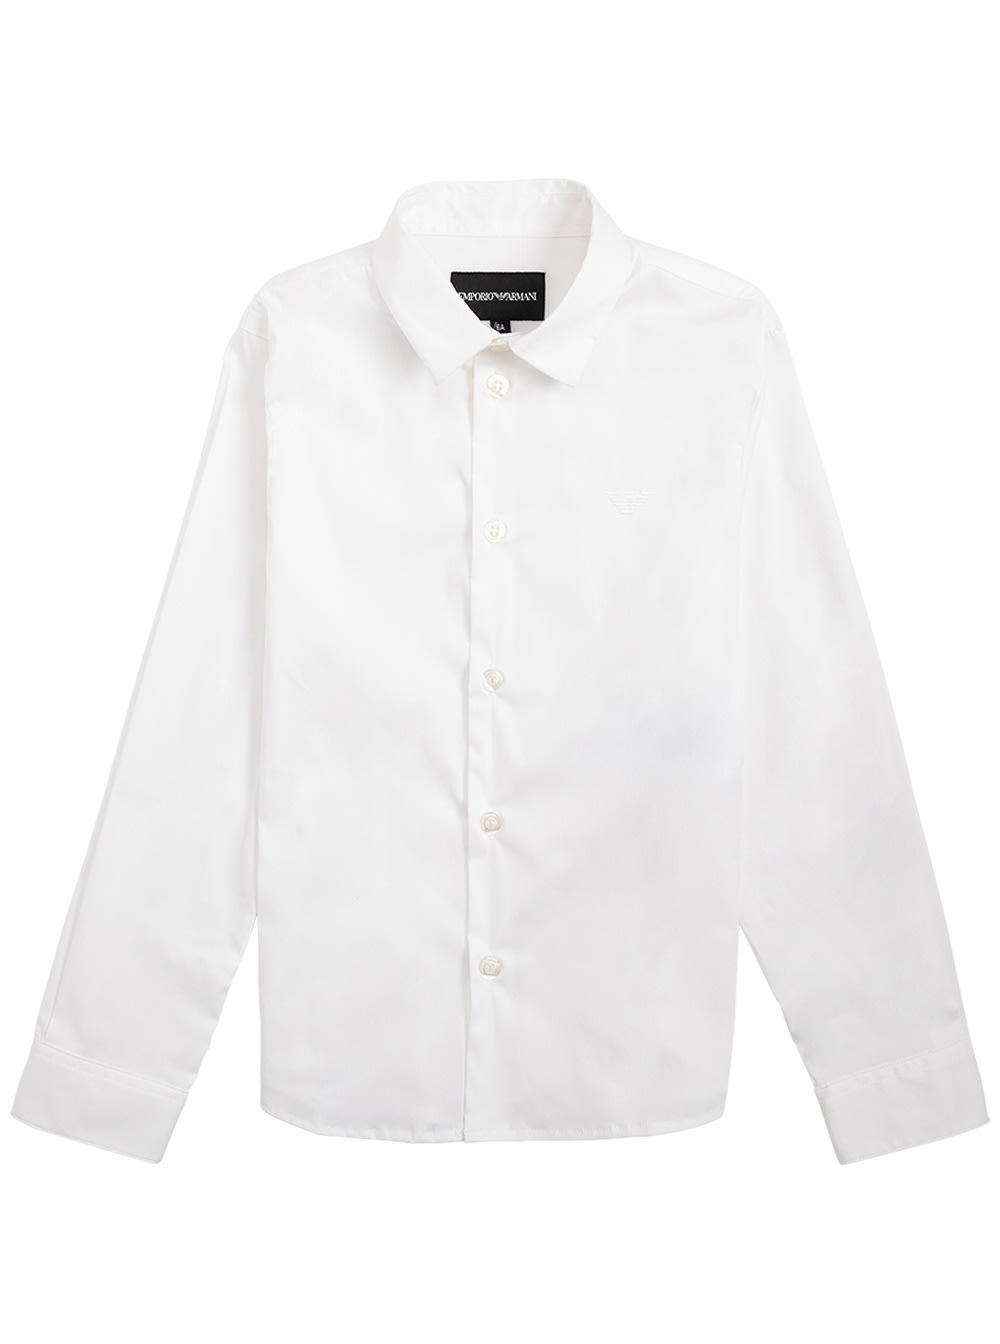 Emporio Armani Kids' White Cotton Poplin Shirt In Bianco Ottico